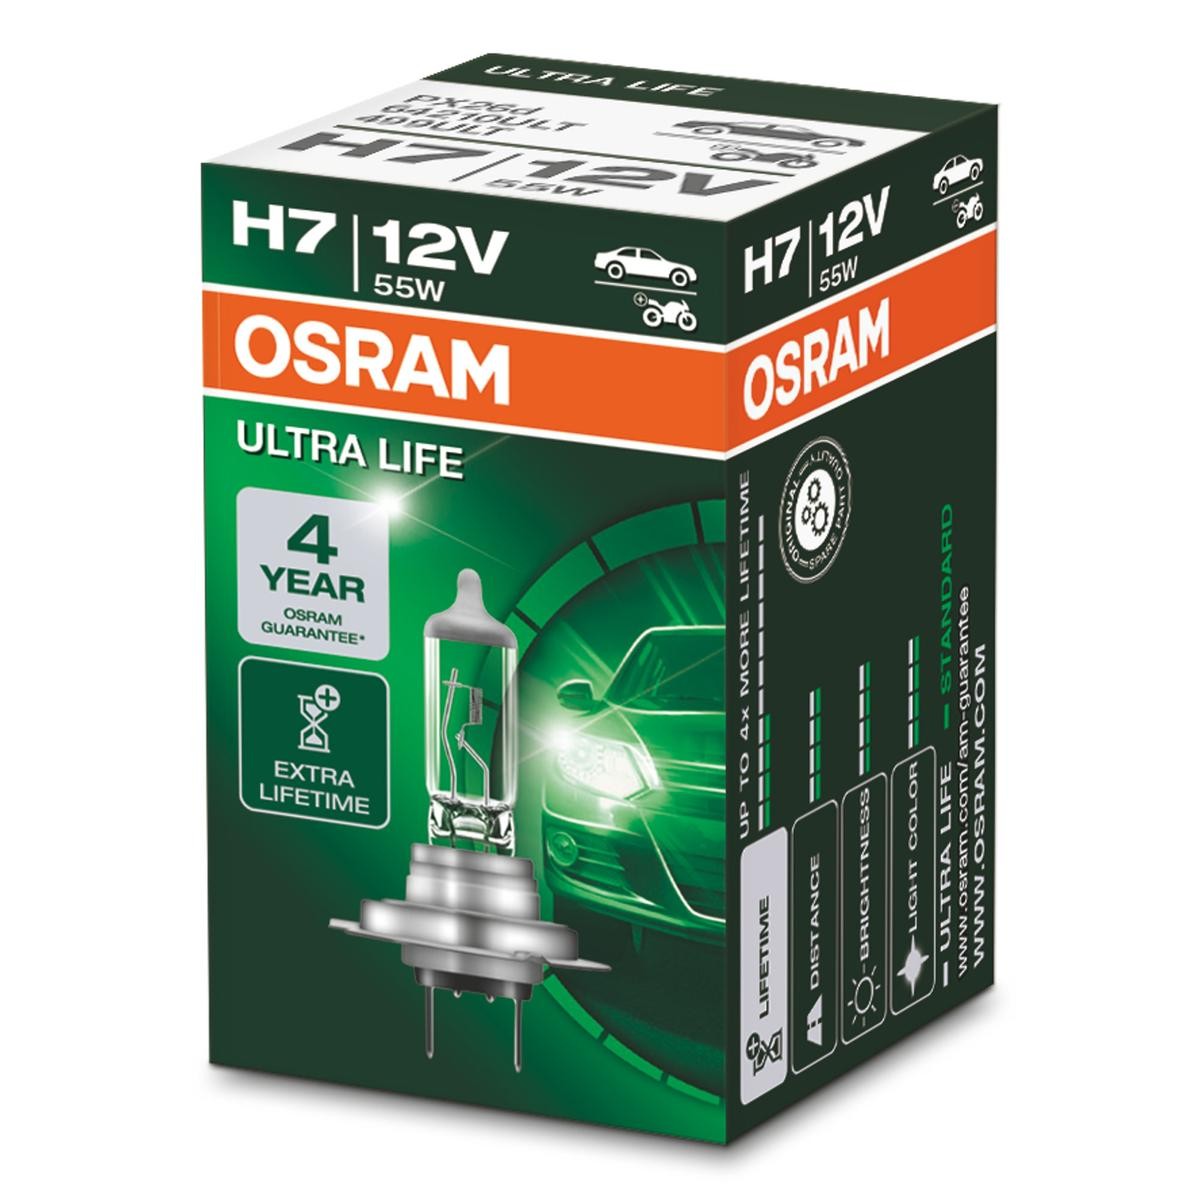 64210ULT OSRAM ULTRA LIFE H7 12V 55W PX26d, 3200K, Halogen Glühlampe,  Fernscheinwerfer